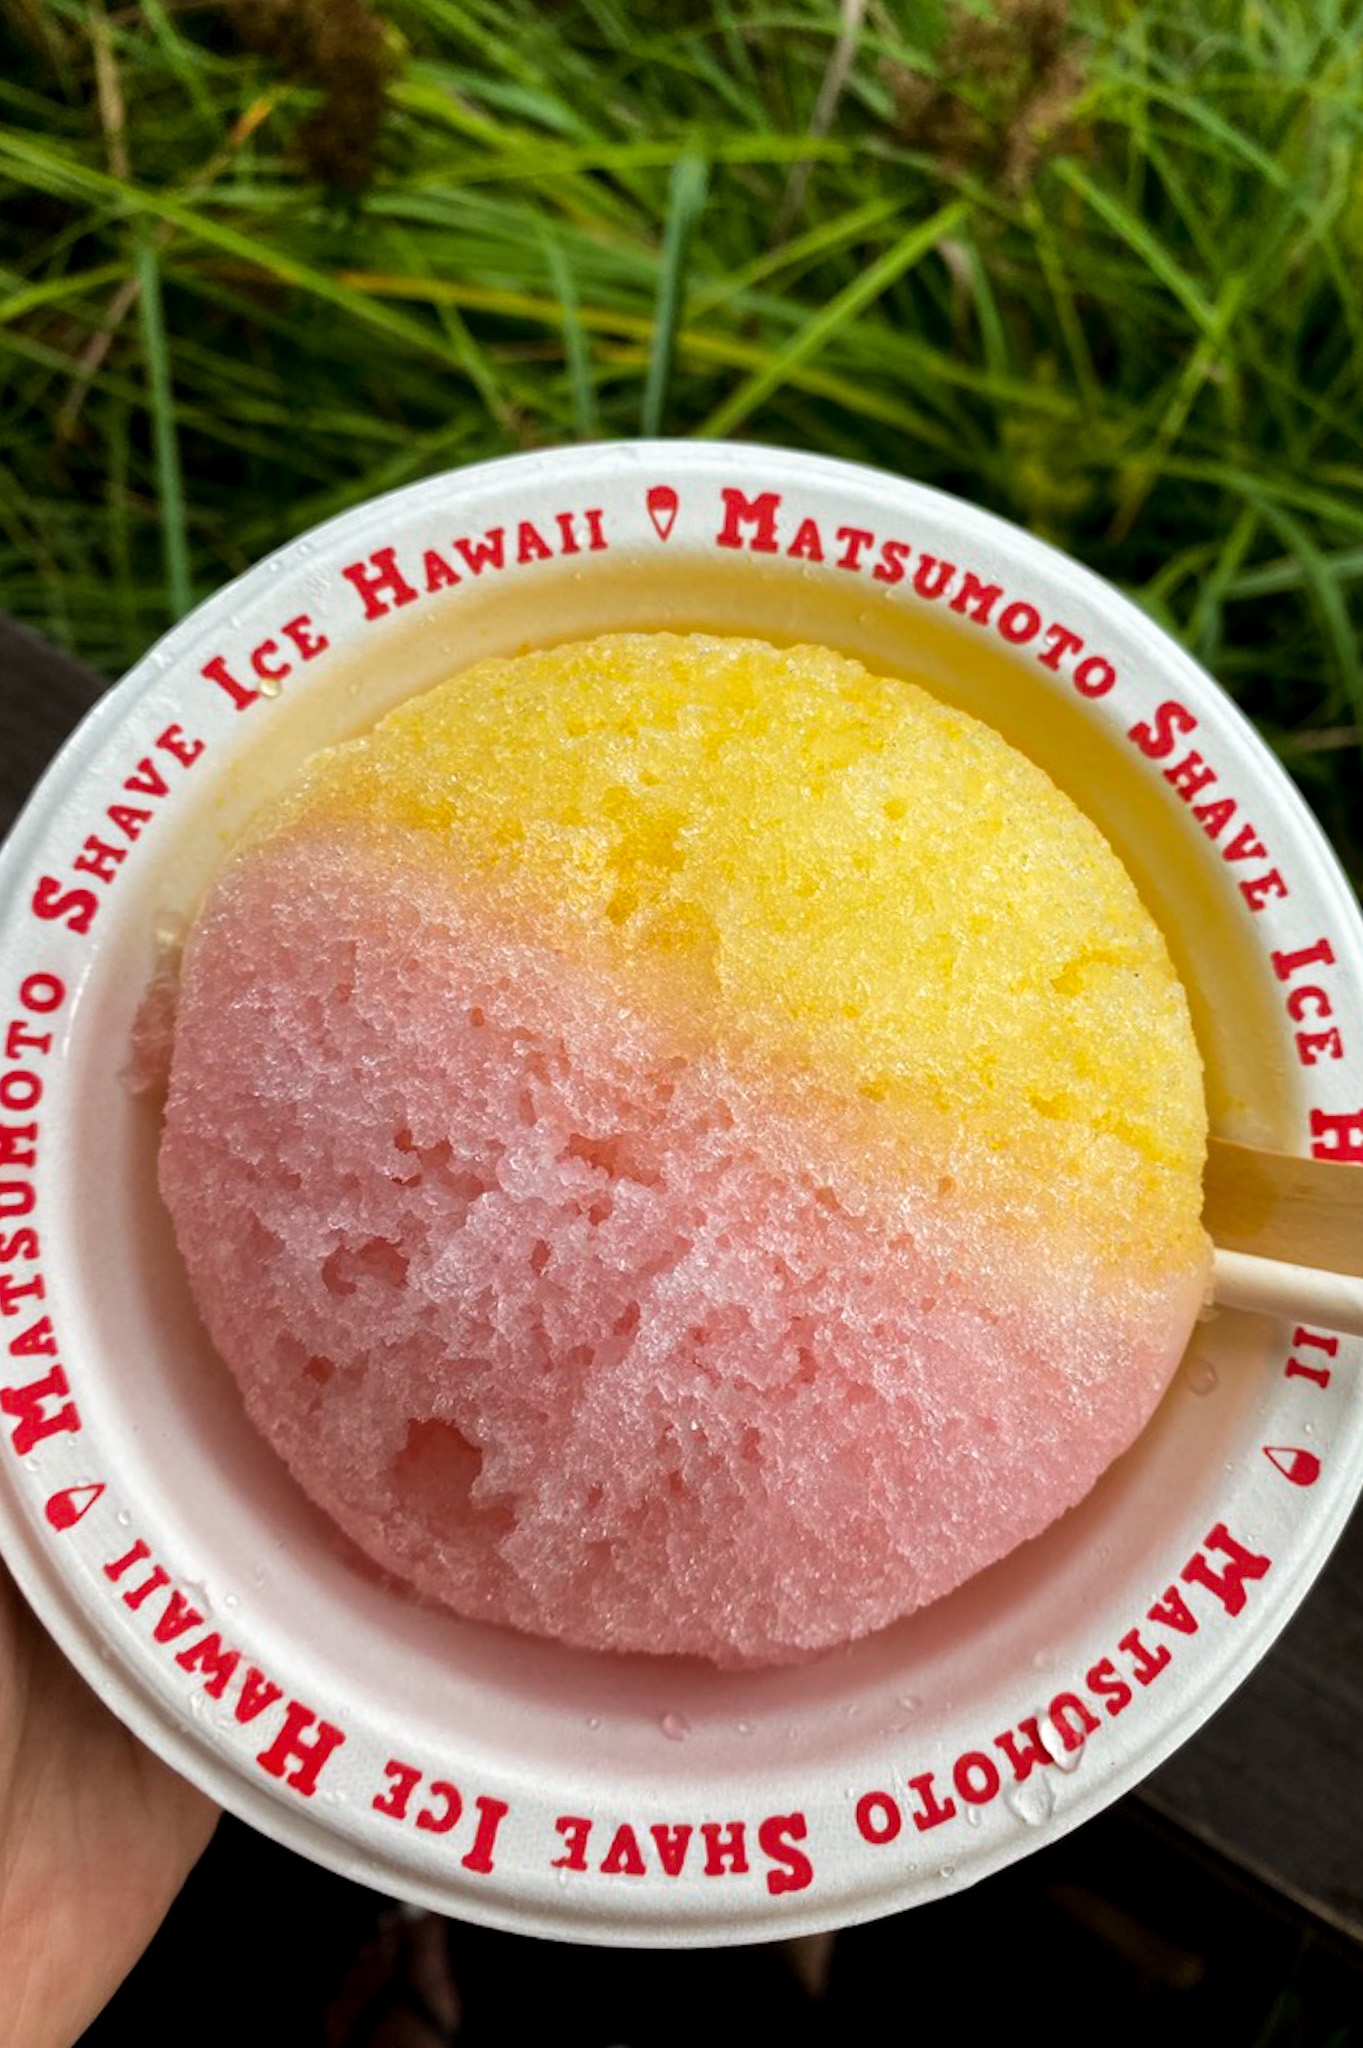 Best shave ice and ice cream Oahu Hawaii - Matsumoto Shave Ice, Haleiwa North Shore Oahu Hawaii - Lilikoi, guava, mango